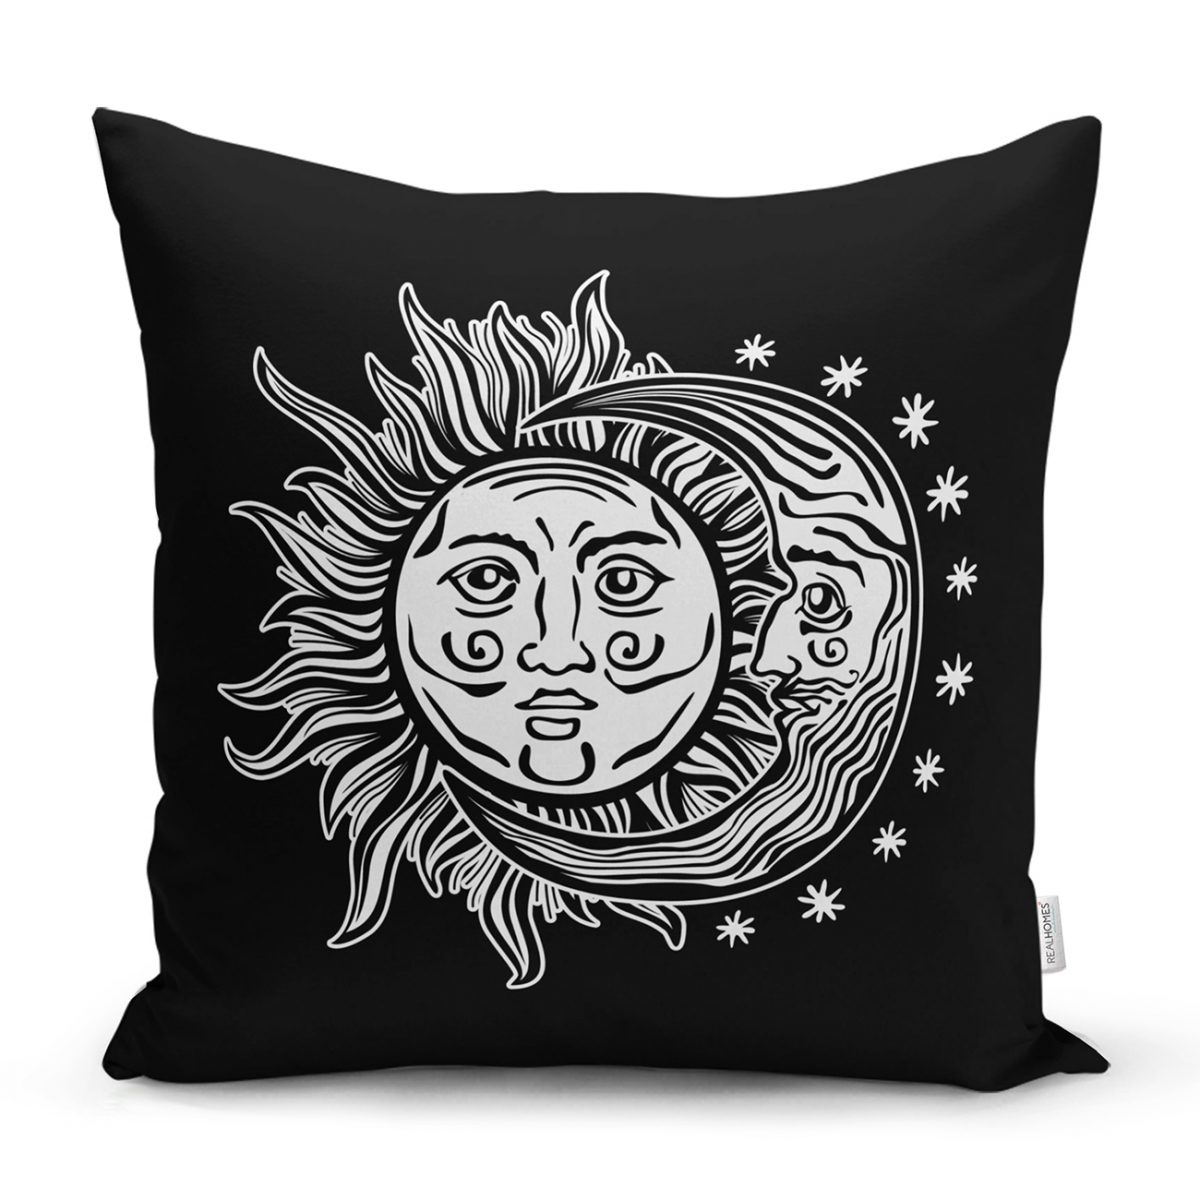 Güneş Ay Yıldızlı Dekoratif Kırlent Kılıfı Realhomes